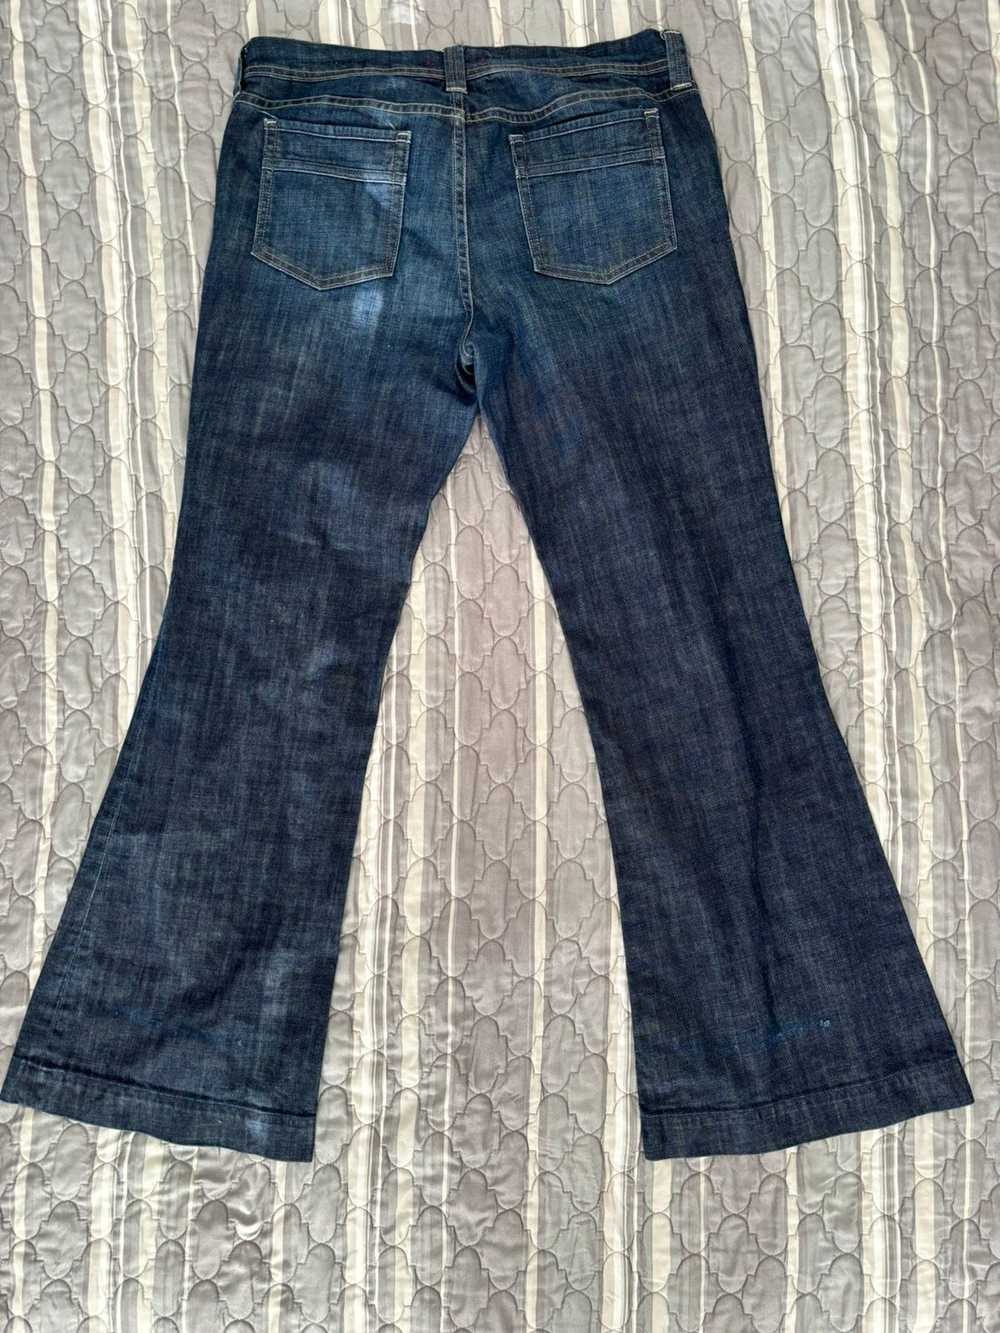 Vintage Vintage Flare Denim Jeans - image 2